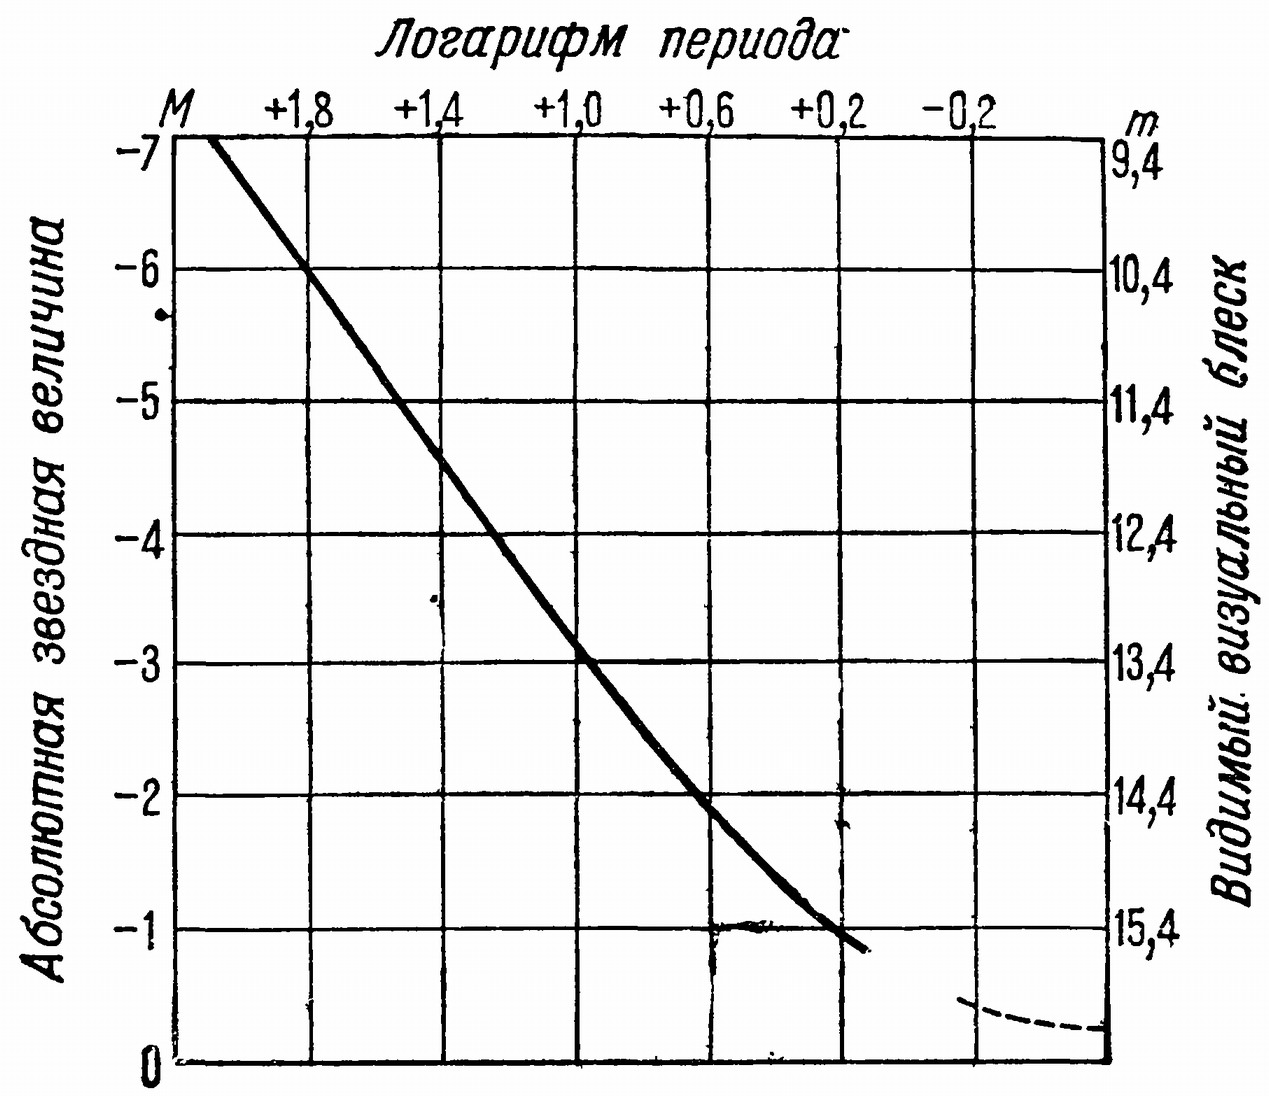 Рис. 157. Кривая «период — абсолютная величина» для цефеид Магеллановых Облаков, построенная американским астрономом Шепли в 1919 г